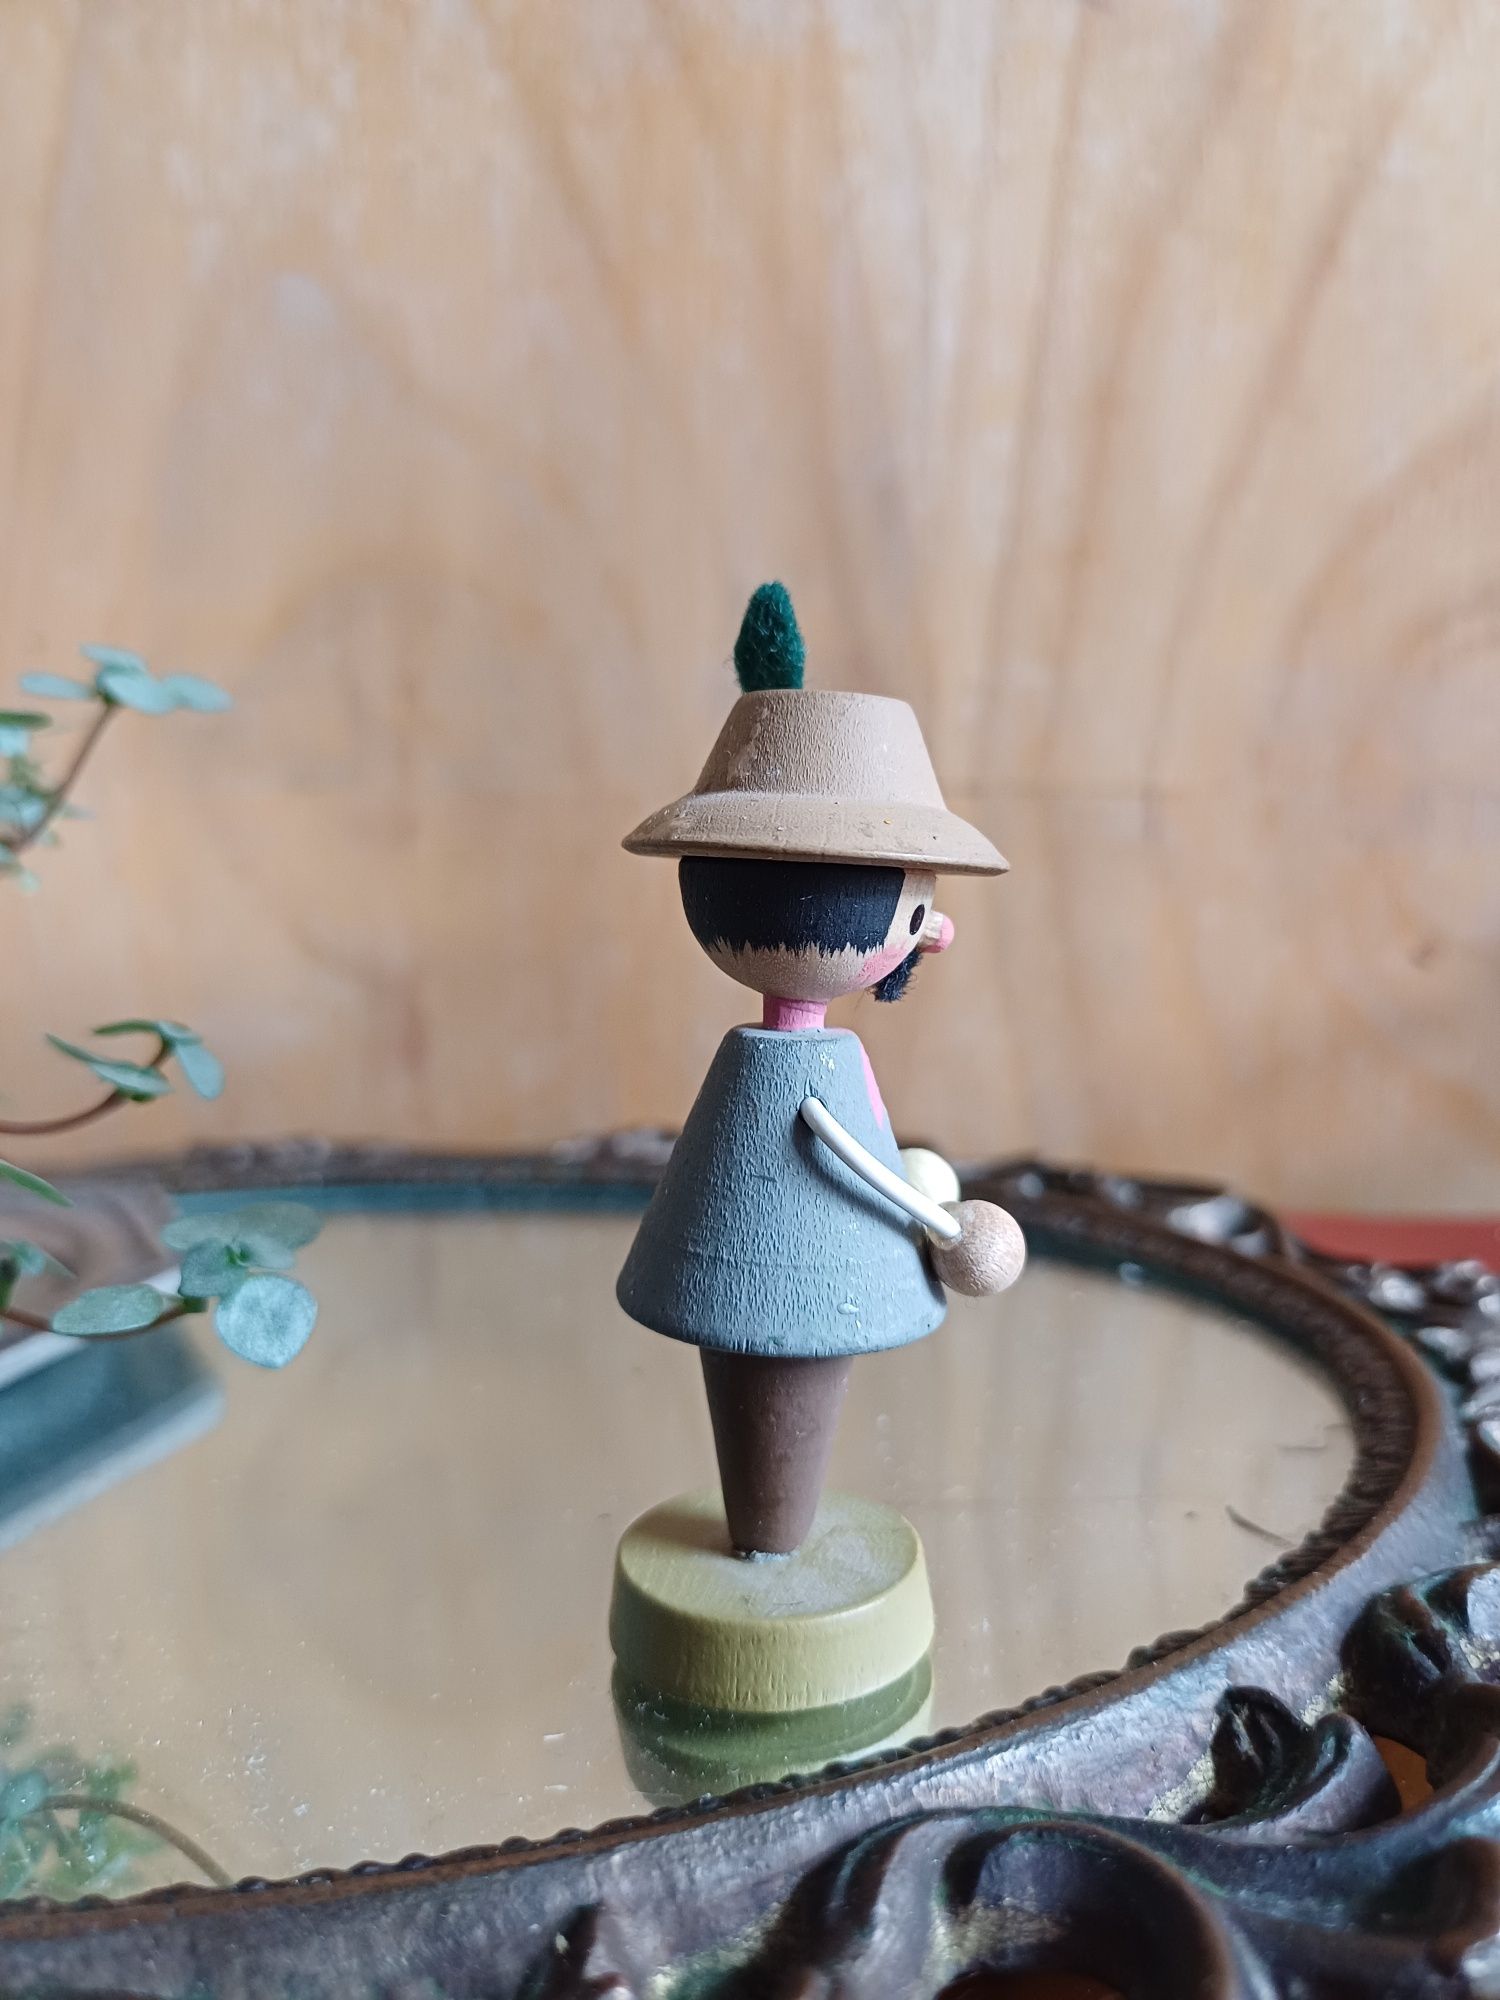 Gajowy gugała drewniana figurka zabawka prl stara vintage ddr retro